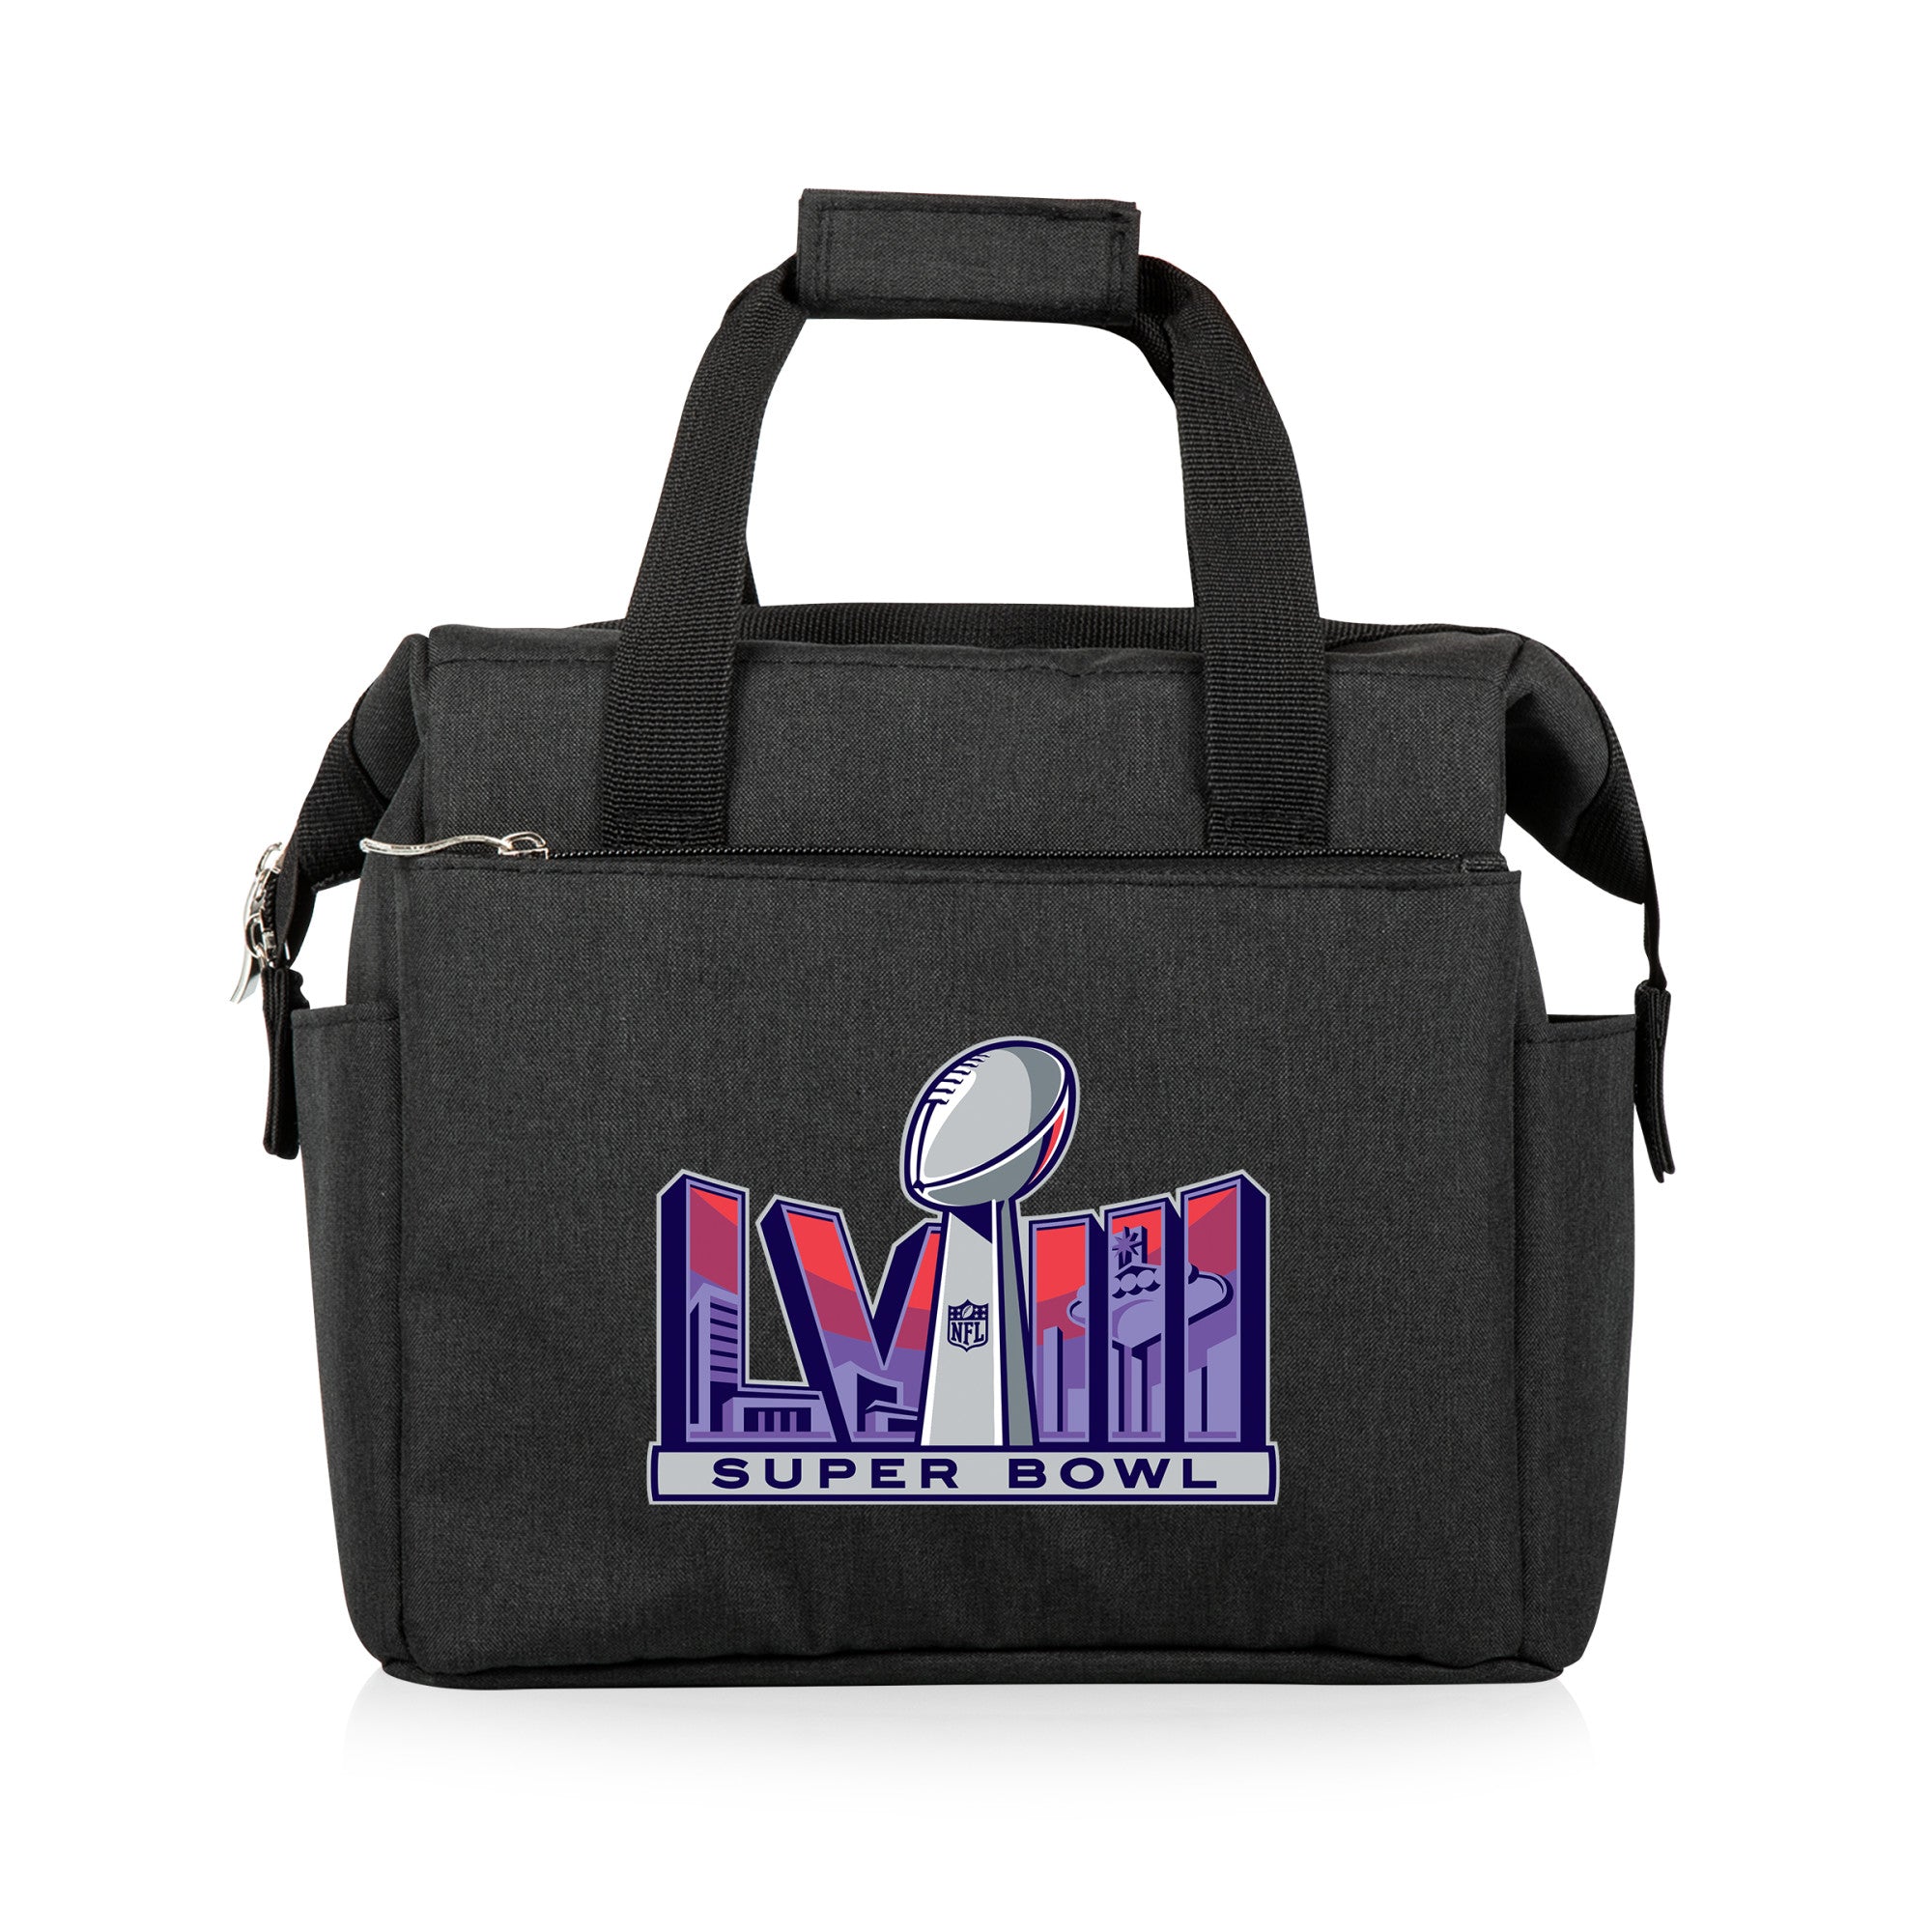 Super Bowl 58 - On The Go Lunch Bag Cooler